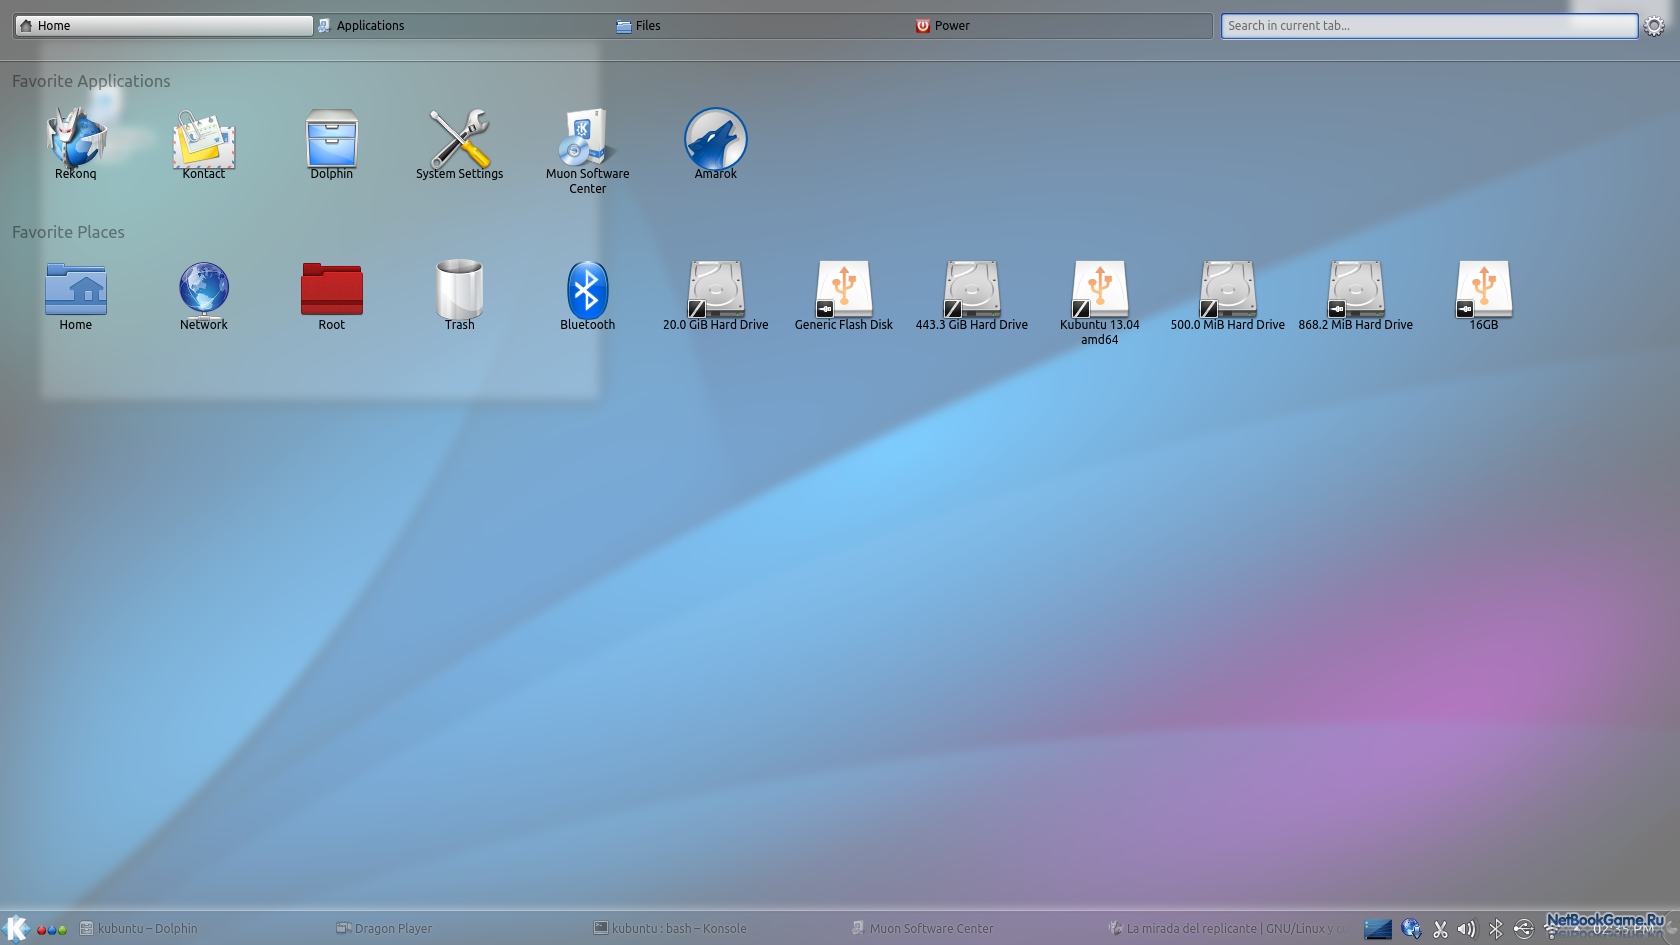 Linux kUbuntu 13.04 OEM